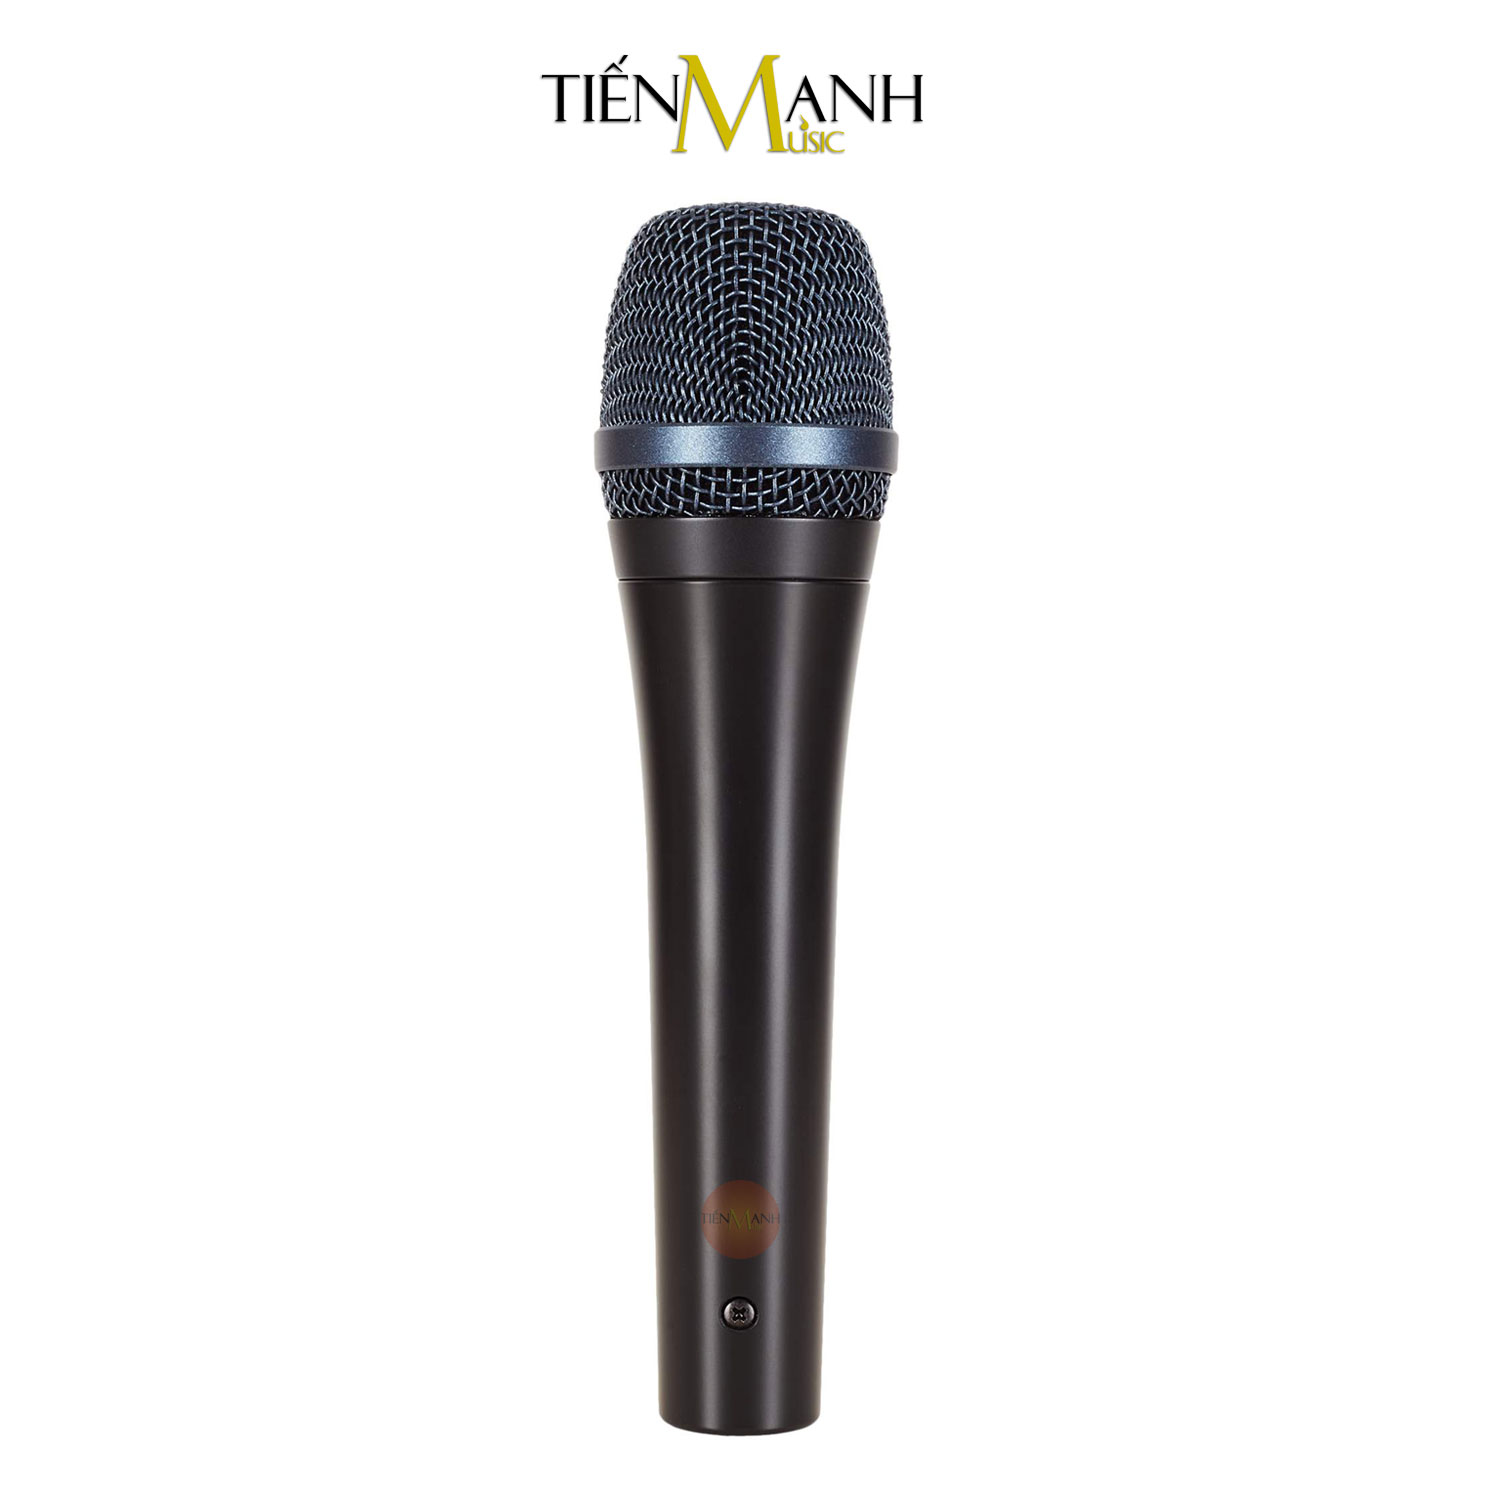 Micro Cầm Tay Sennheiser E945 - Mic Dynamic Vocal Microphone E 945 Hàng Chính Hãng - Kèm Móng Gẩy DreamMaker